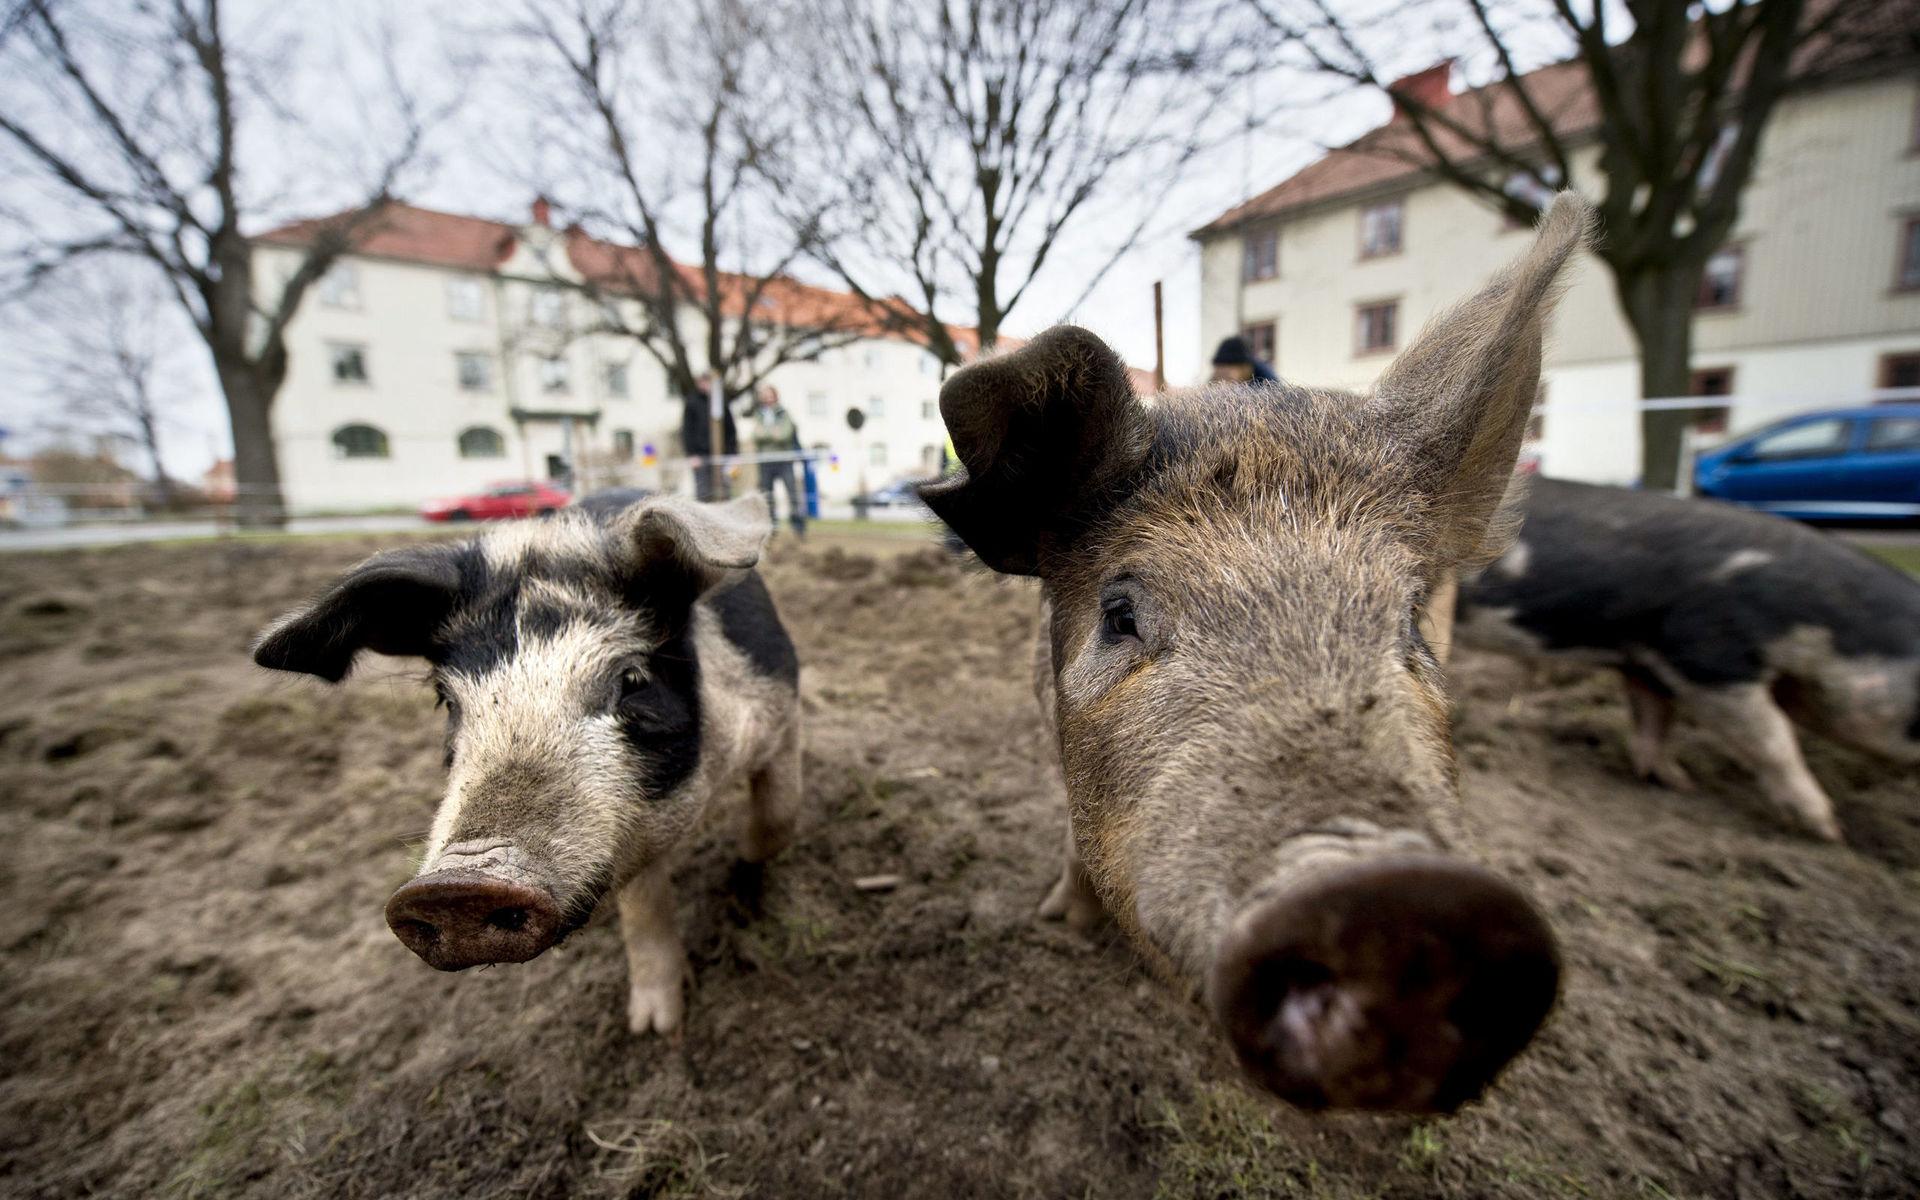 Stadsjord har lånat ut grisar till flera stadsdelar i Göteborg. Nu har de fått utökade arbetsuppgifter som ogräsbekämpare.